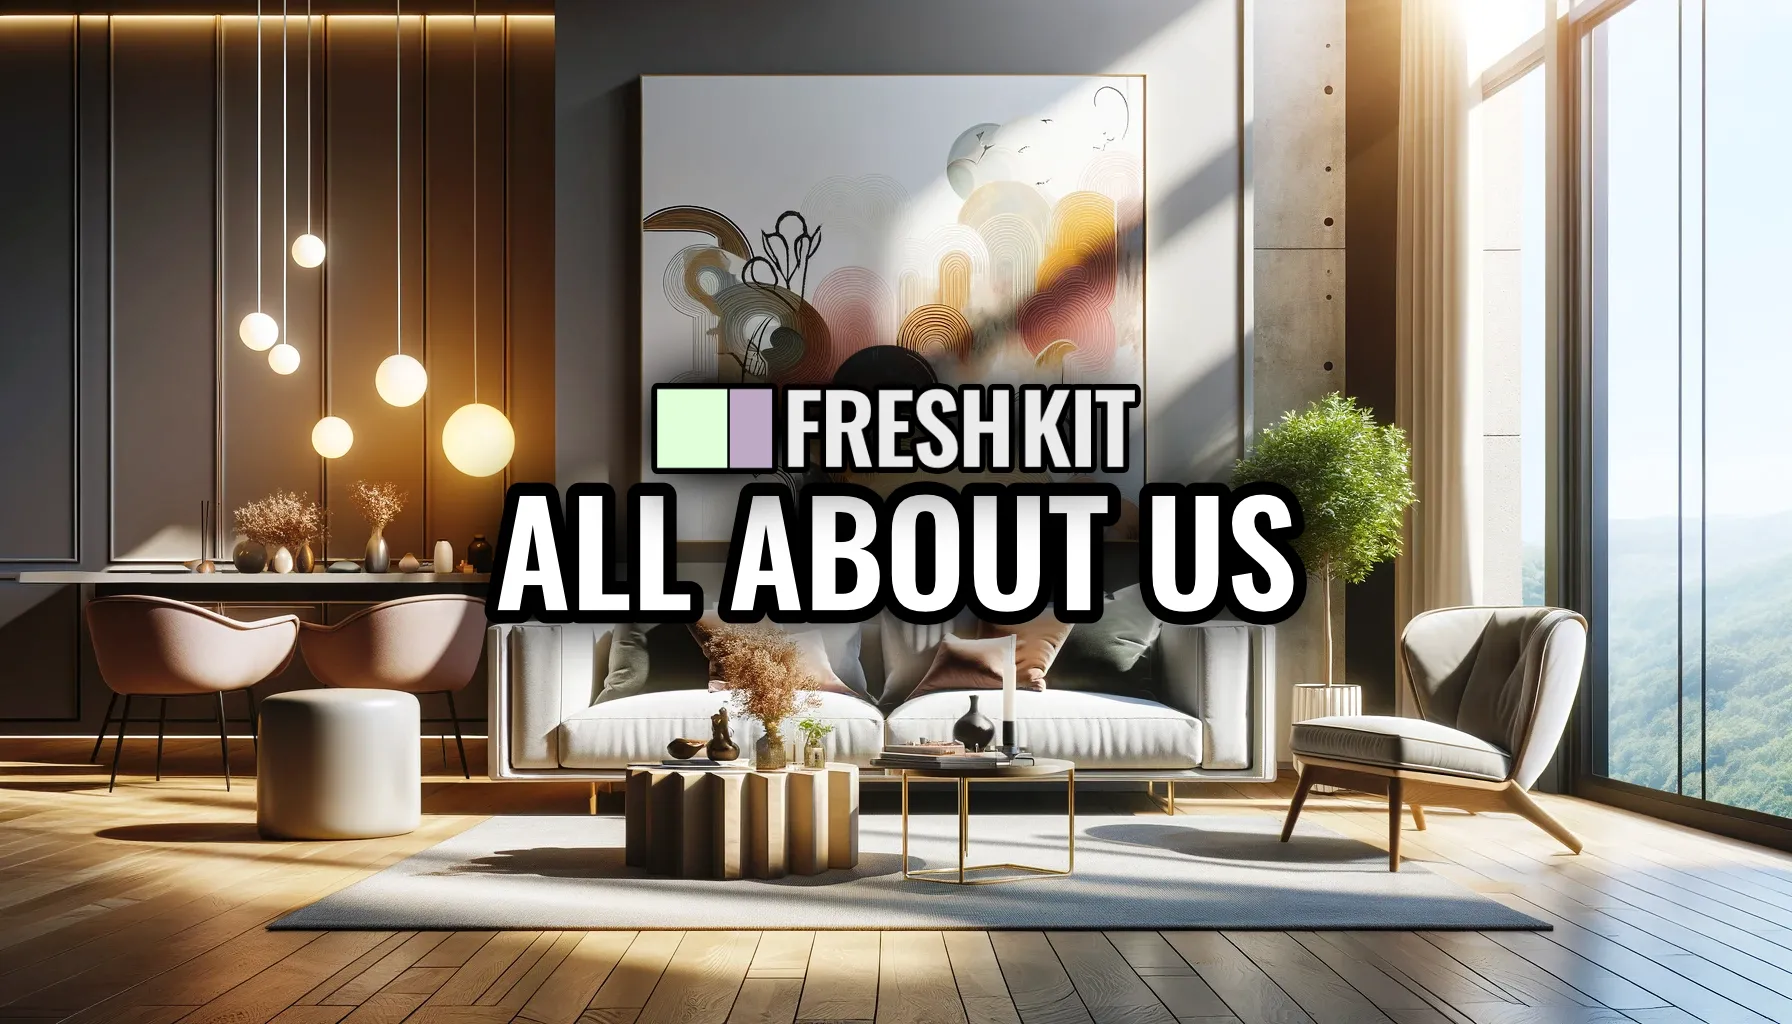 About Us Freshkit